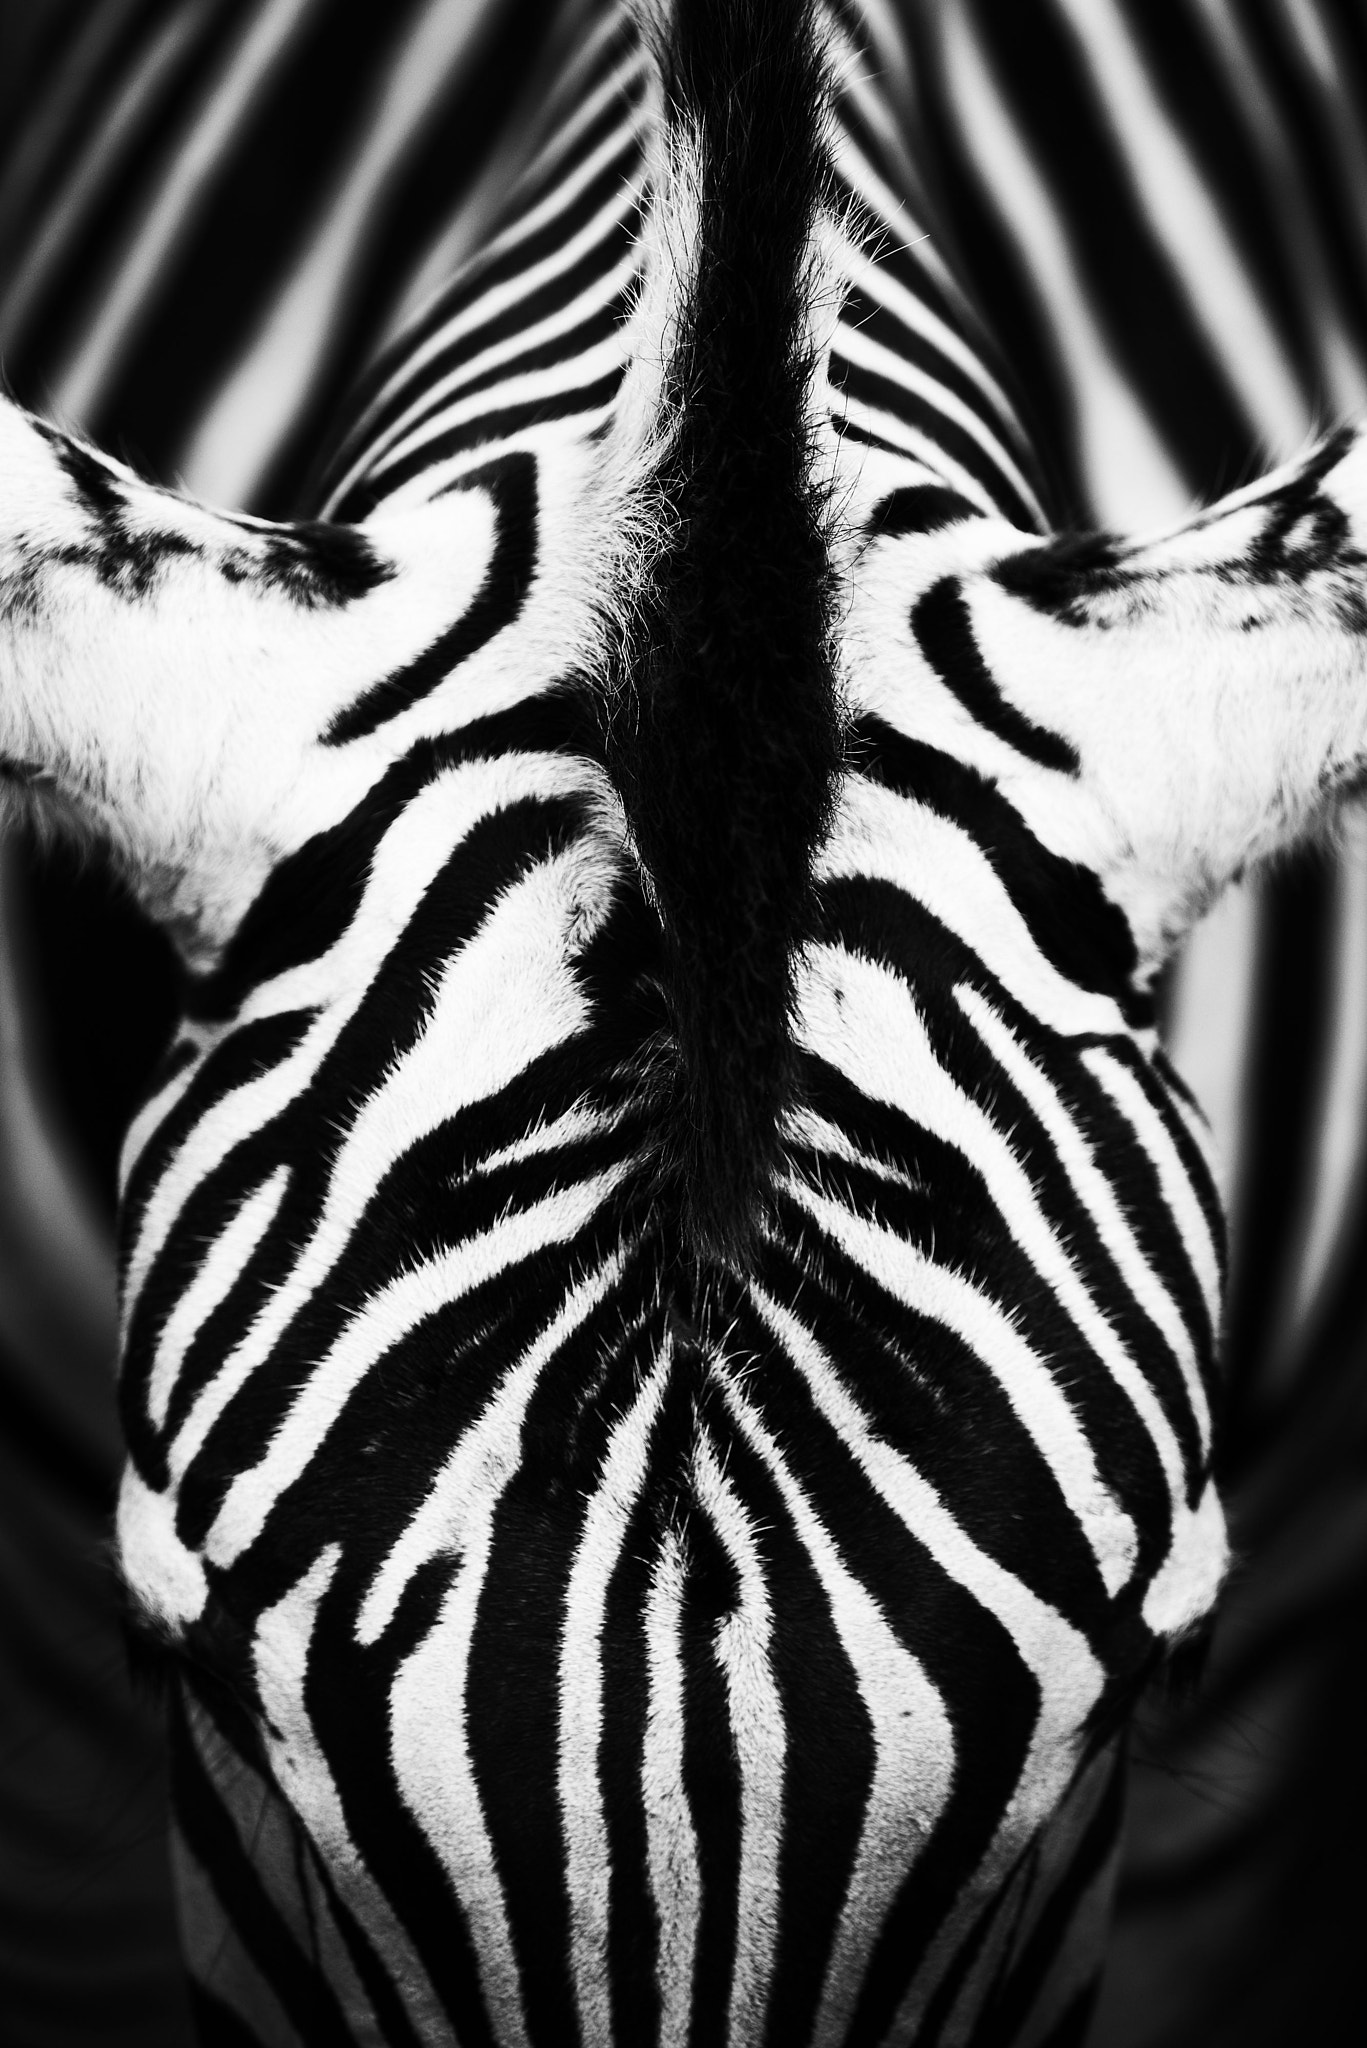 Nikon D800 + Nikon Nikkor AF-S 300mm F4E PF ED VR sample photo. Skin of an african zebra photography